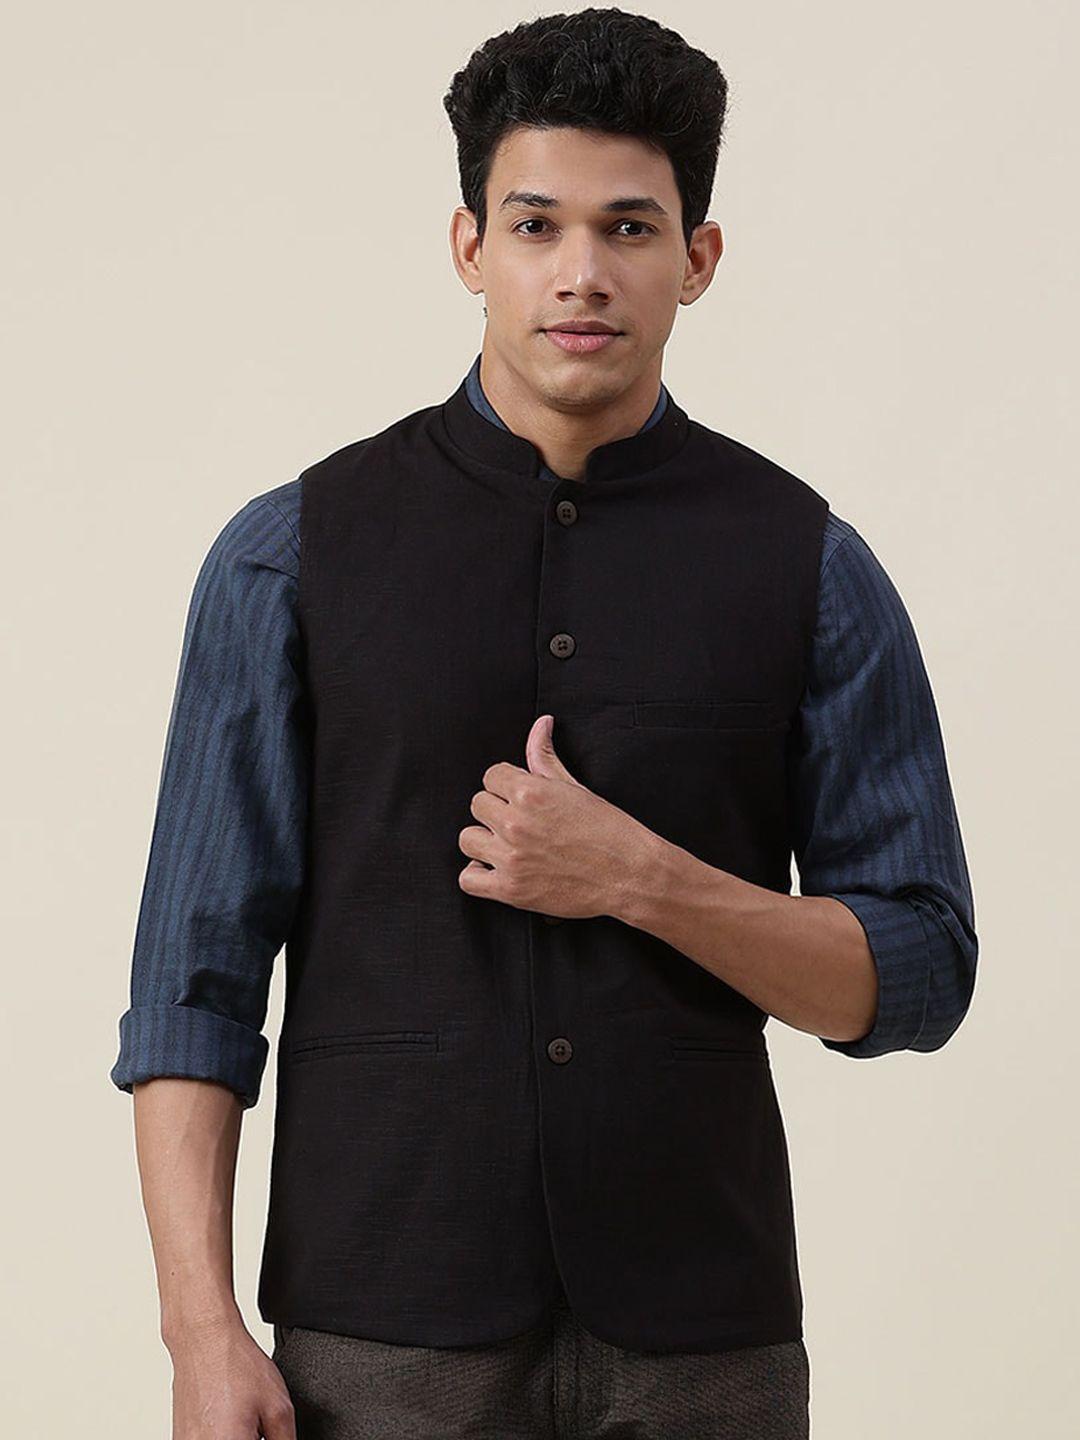 fabindia-men-black-solid-cotton-nehru-jackets